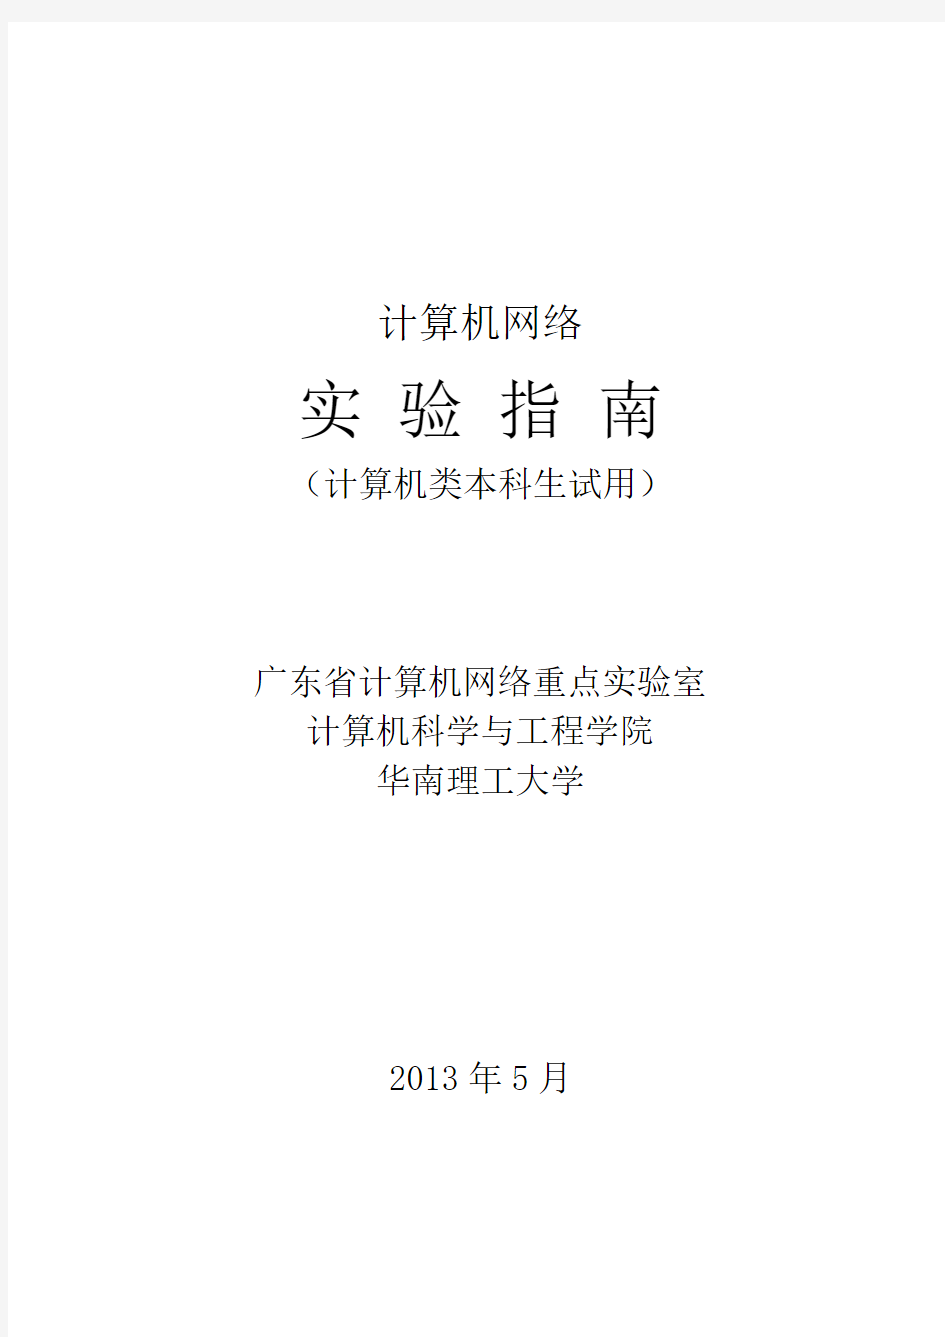 《计算机网络》实验指南修订版(201312) (1)